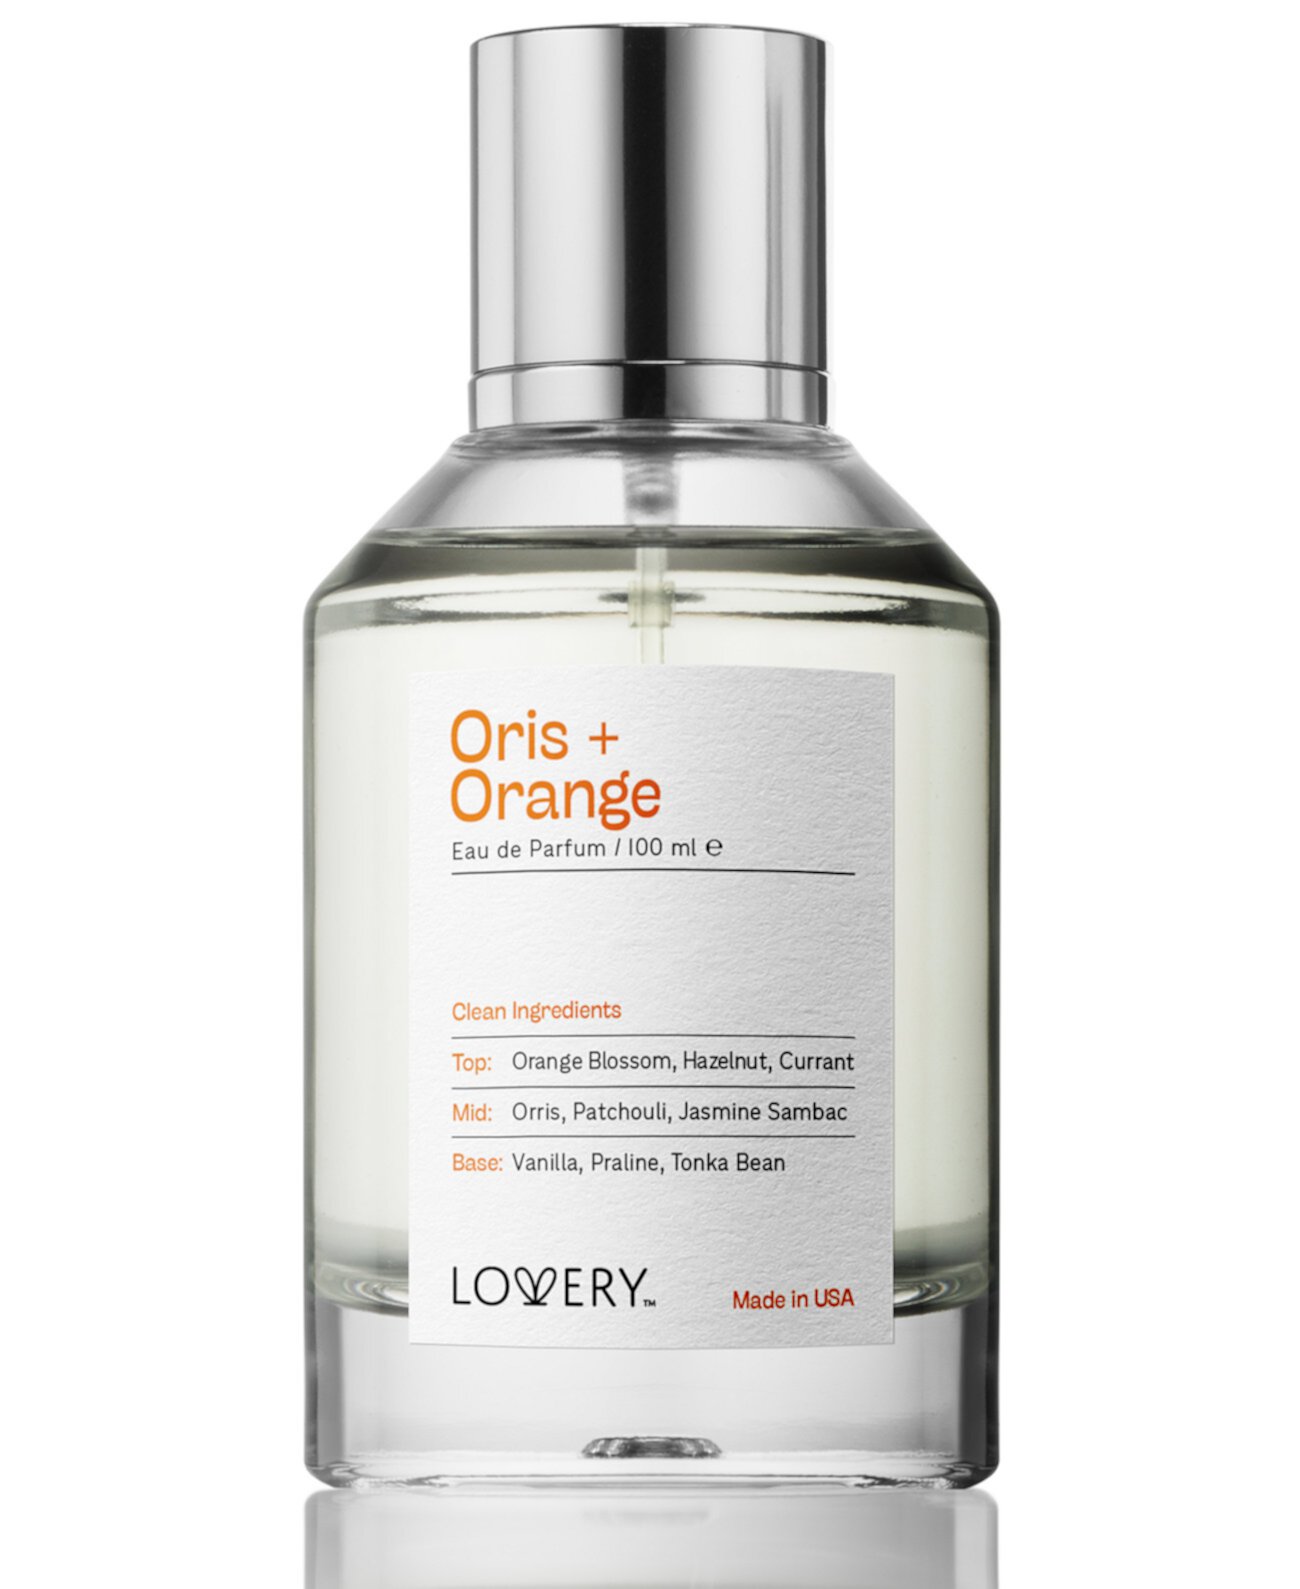 Oris + Orange Eau de Parfum, 3.4 oz. Lovery